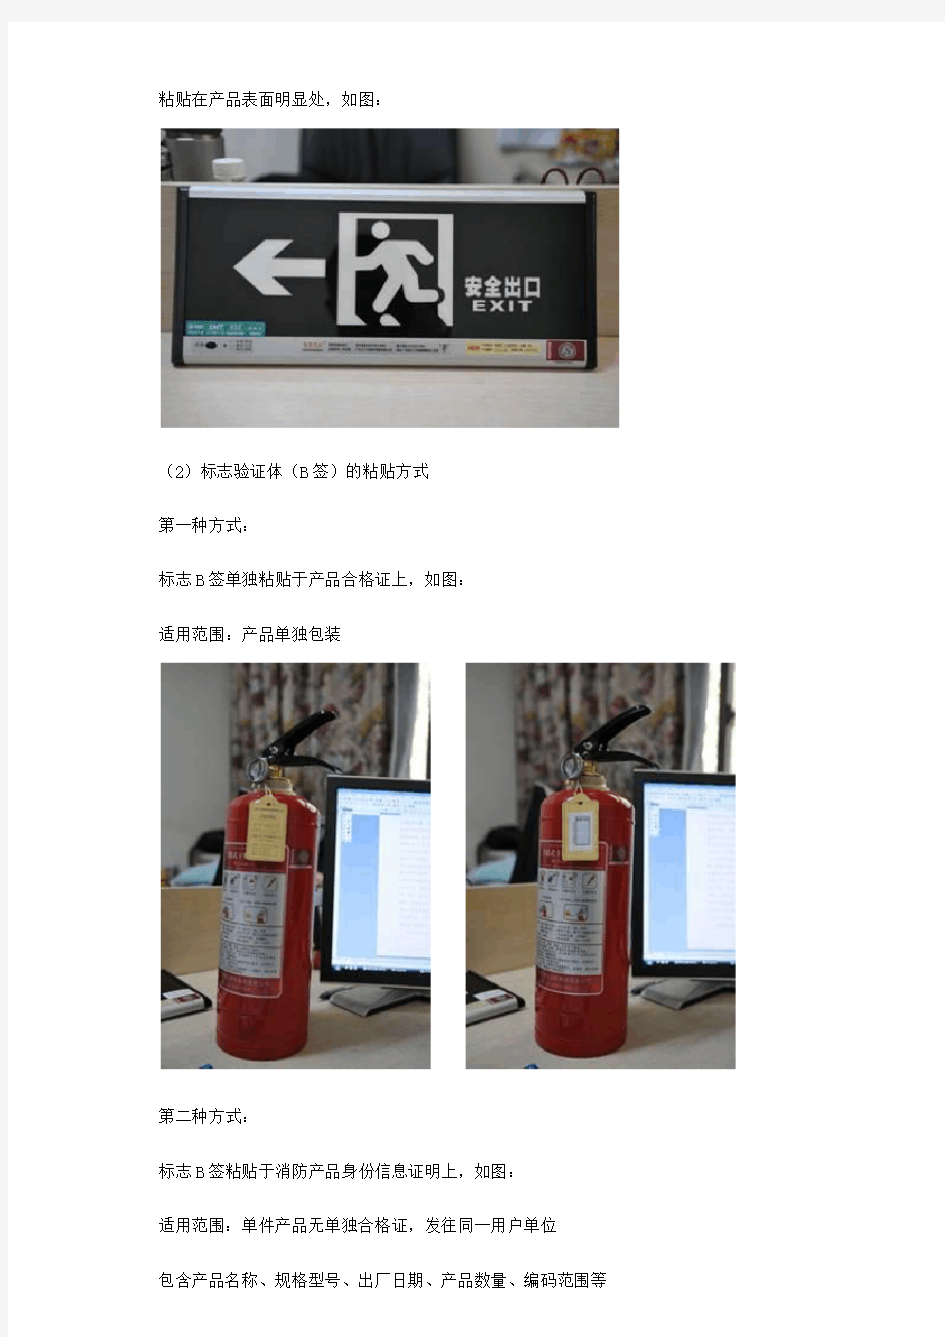 消防产品身份信息标志说明